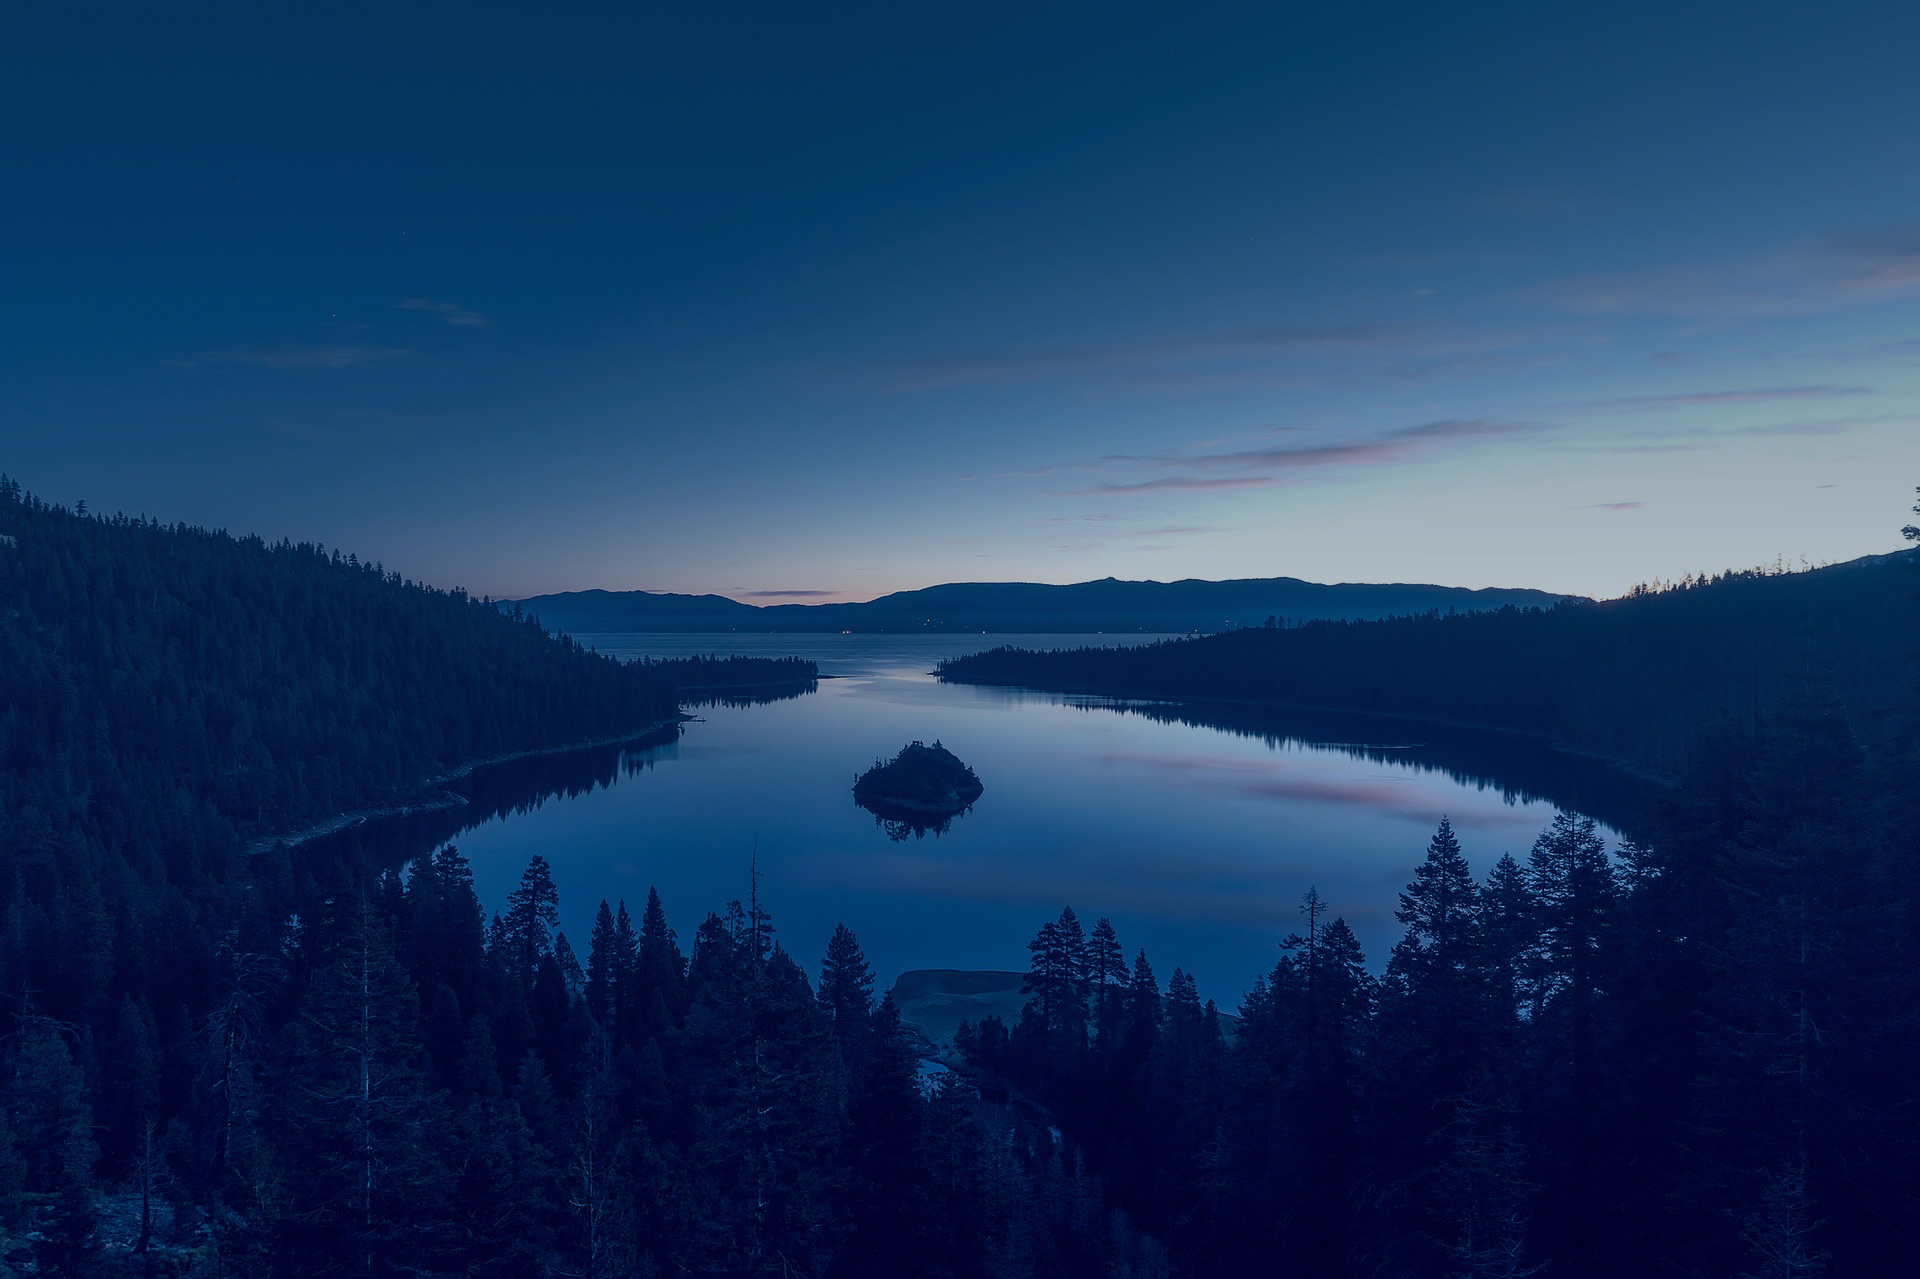 Lake in the night